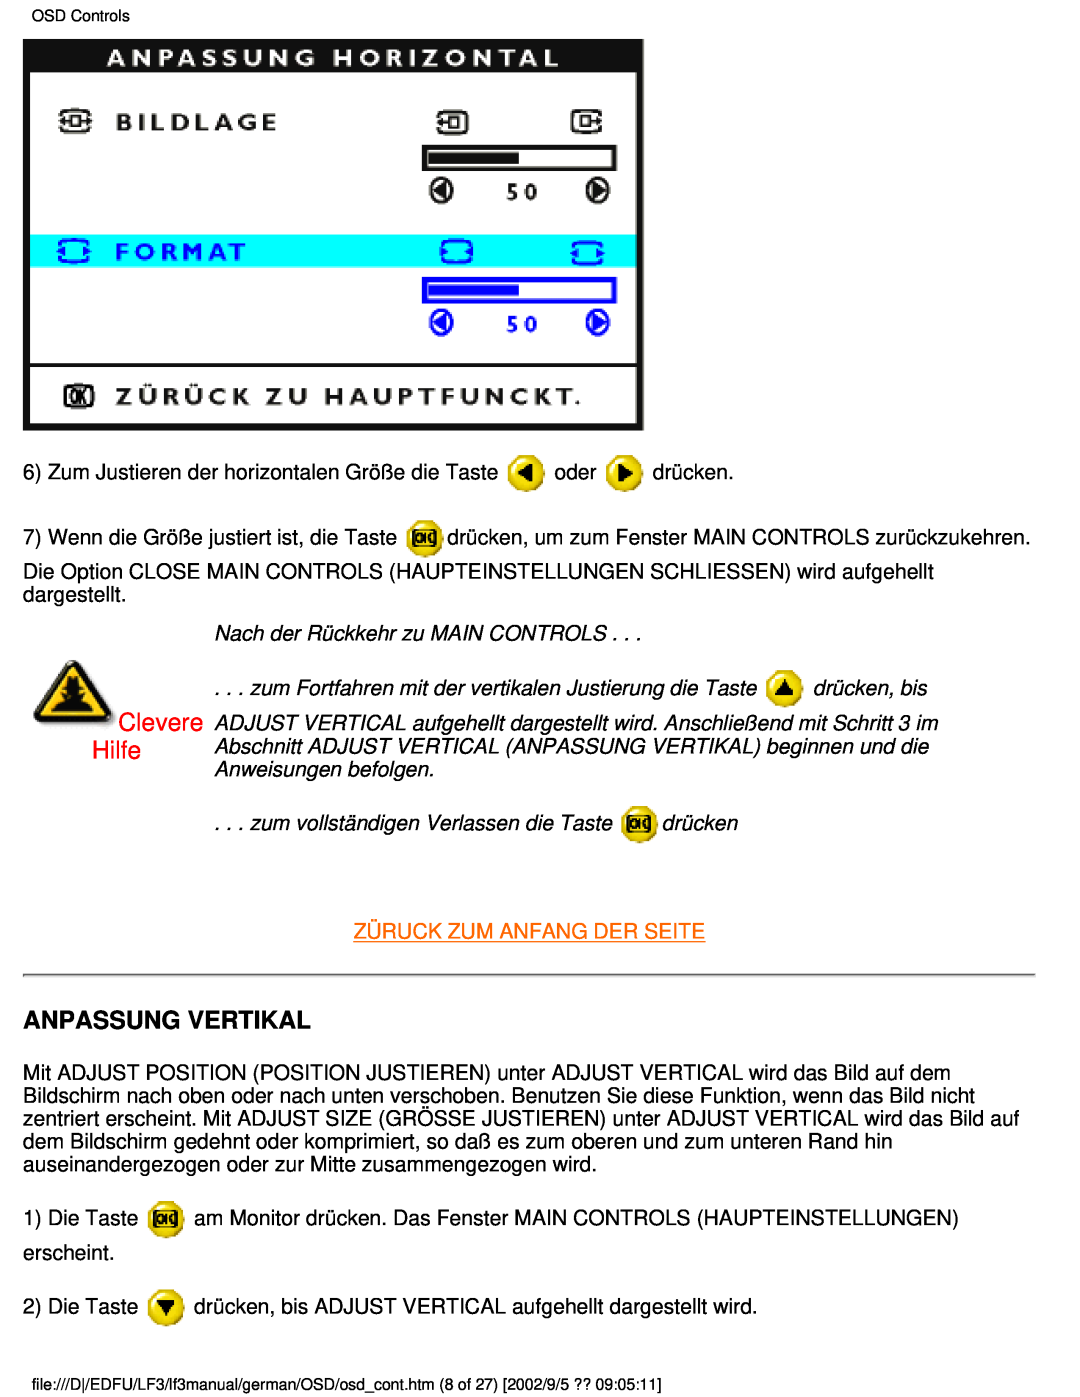 Philips 107E user manual Anpassung Vertikal, Clevere Hilfe, Nach der Rückkehr zu MAIN CONTROLS, drücken, bis 